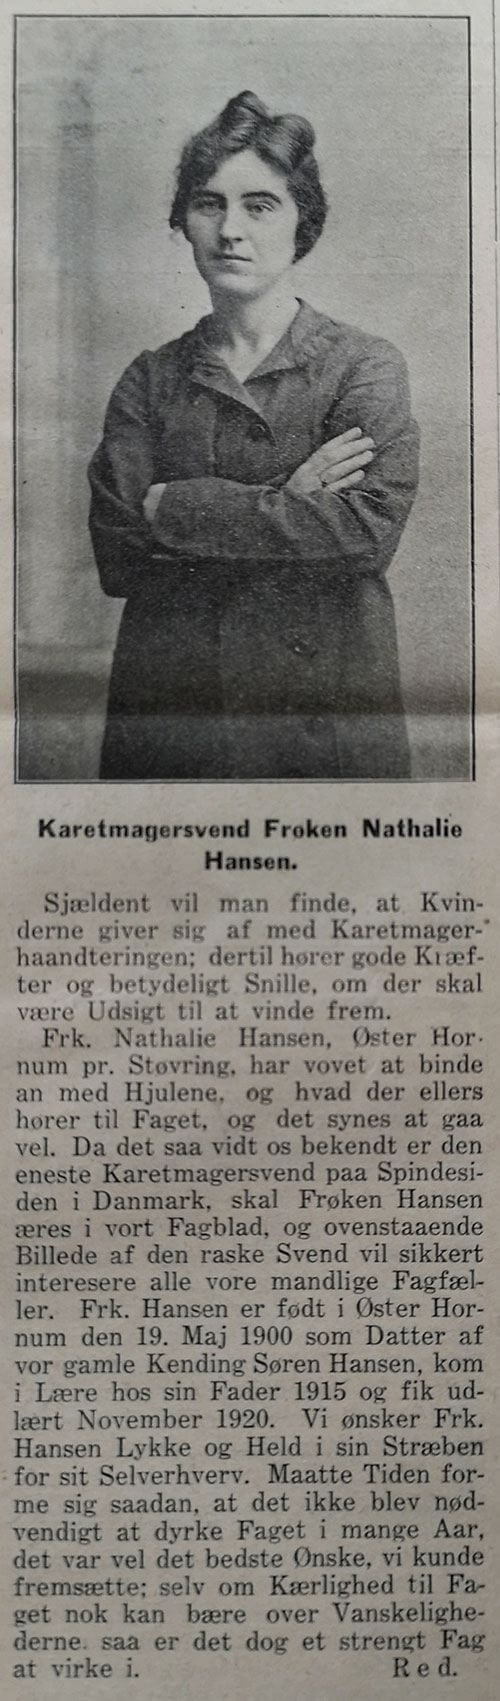 Karetmager Nathalia Hansen. Artikel i Medlemsblad for Sammenslutningen af Karetmagermestre i Danmark, 13. september 1921.